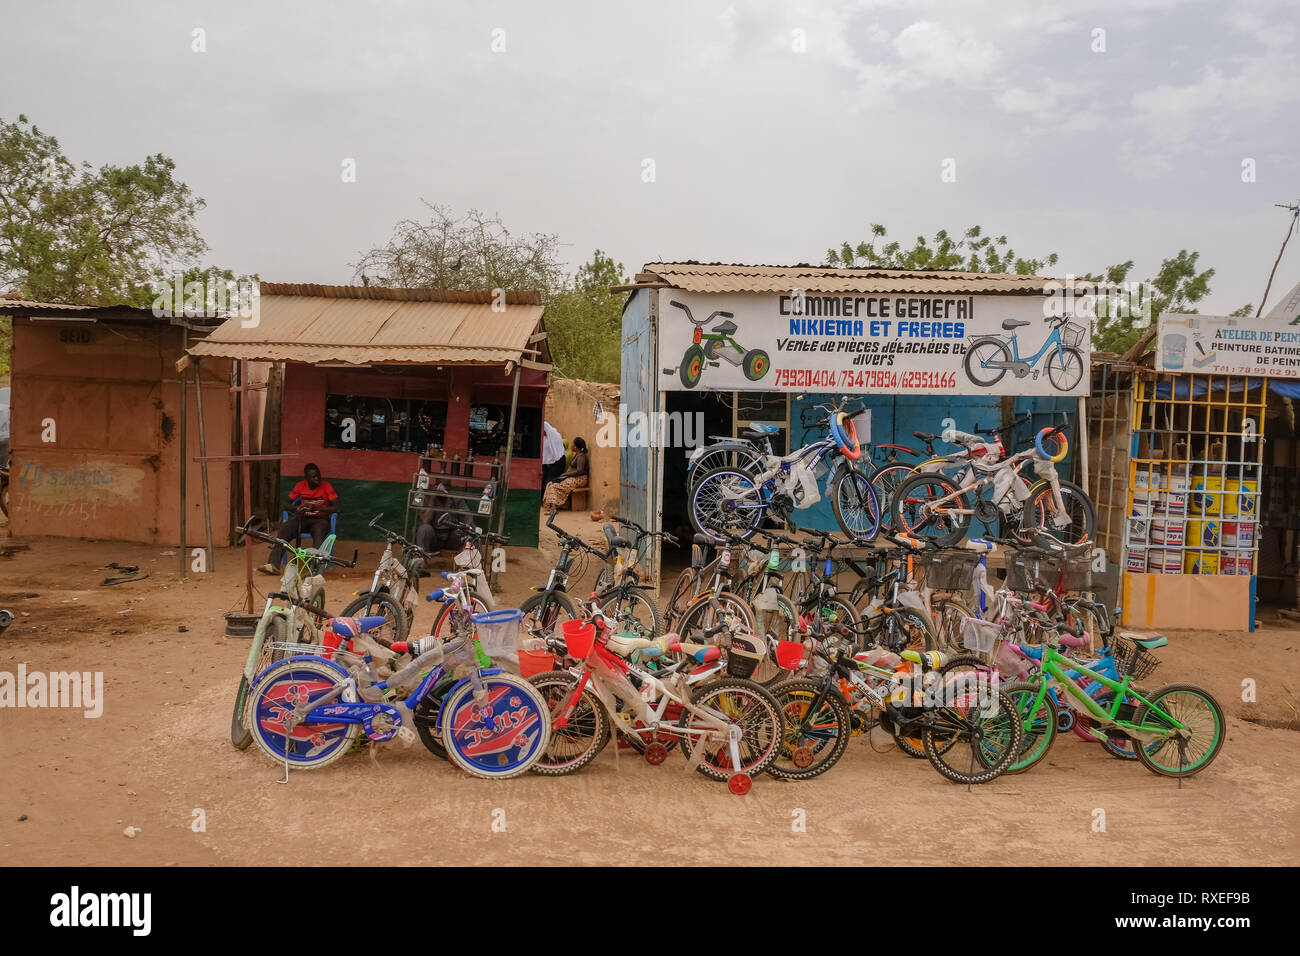 La petite entreprise en Afrique : un magasin de vélos dans une rue de  Ouagadougou, capitale du Burkina Faso, vend des bicyclettes Photo Stock -  Alamy